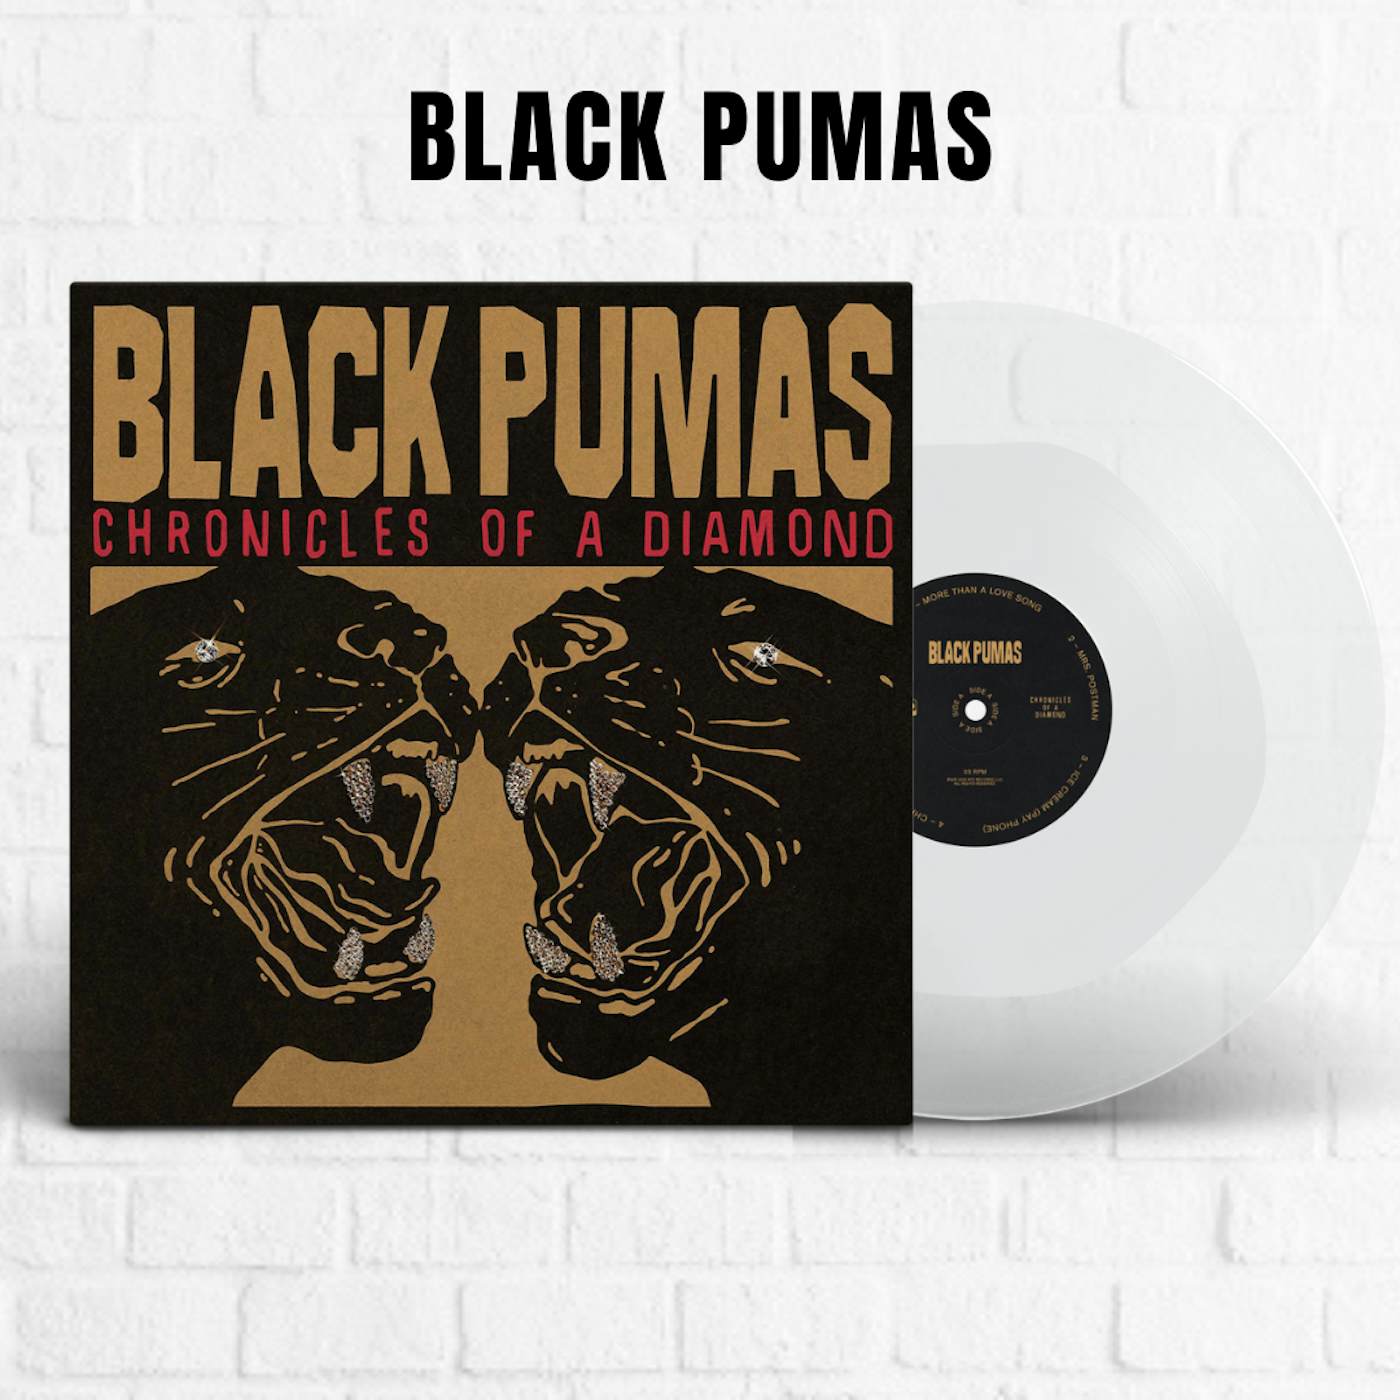 Black Pumas Shirts, Black Pumas Merch, Black Pumas Hoodies, Black Pumas  Vinyl Records, Black Pumas Posters, Black Pumas Hats, Black Pumas CDs, Black  Pumas Music, Black Pumas Merch Store